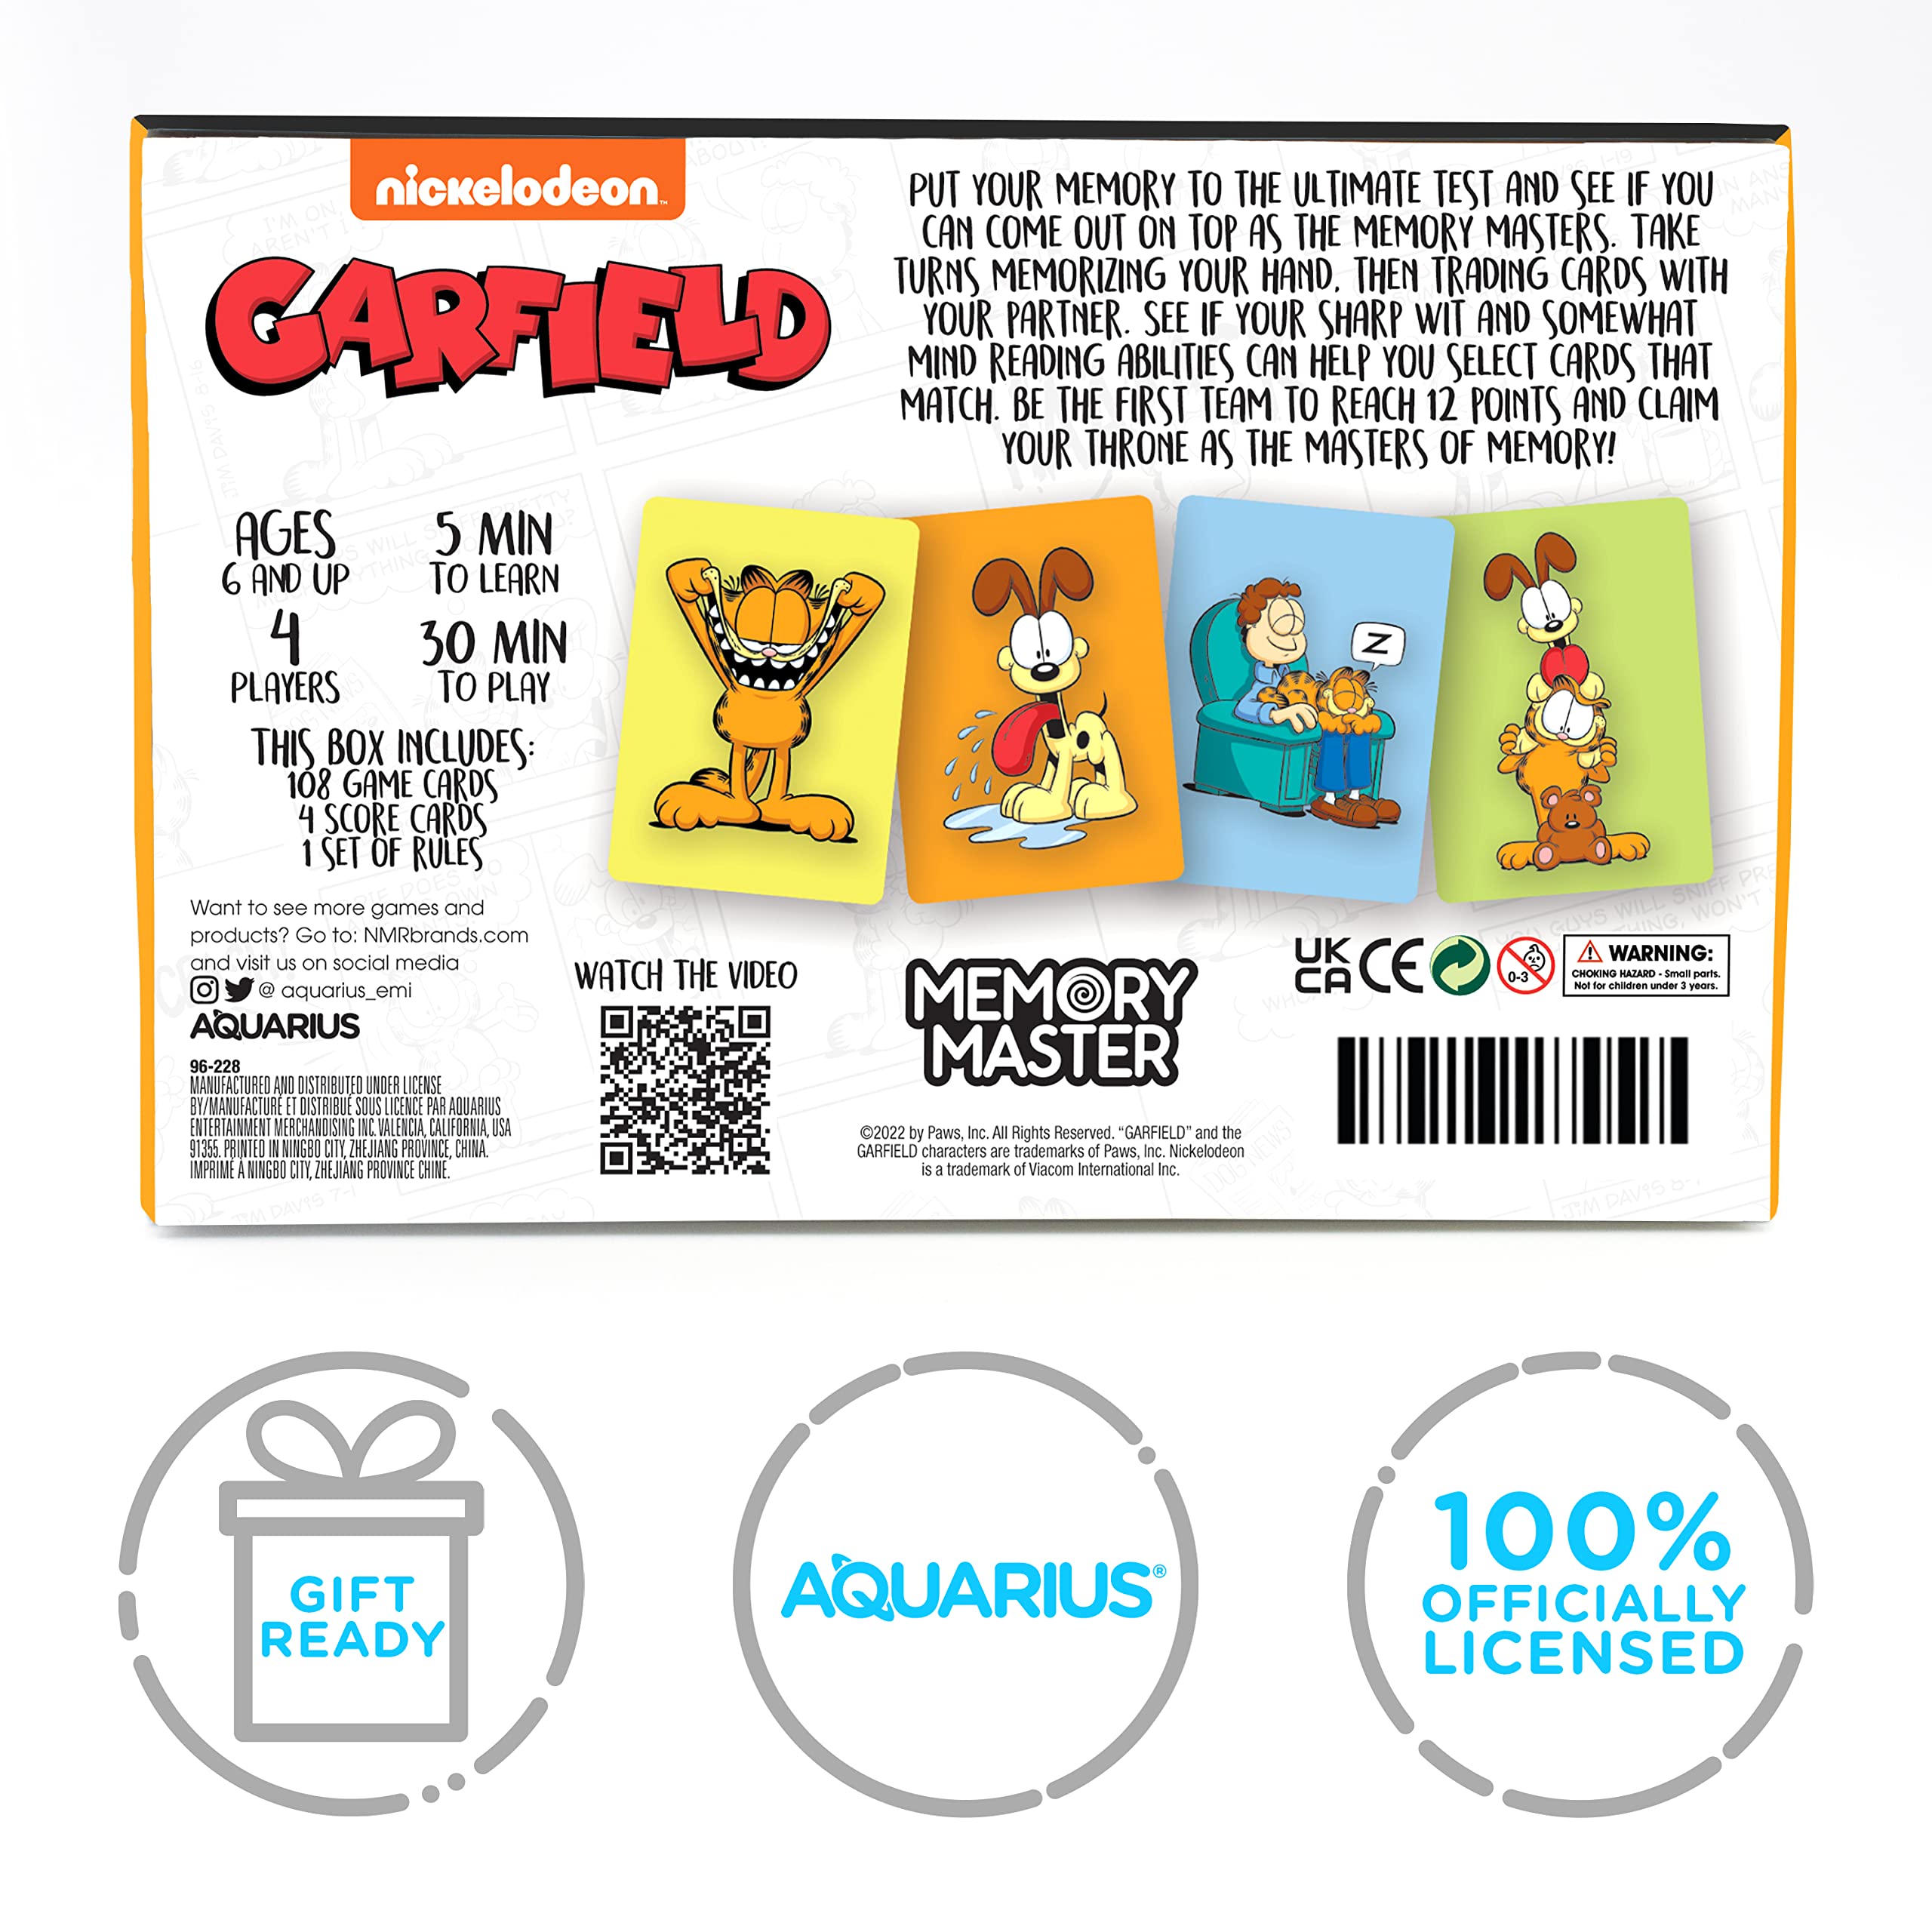 AQUARIUS - Garfield Memory Master Card Game